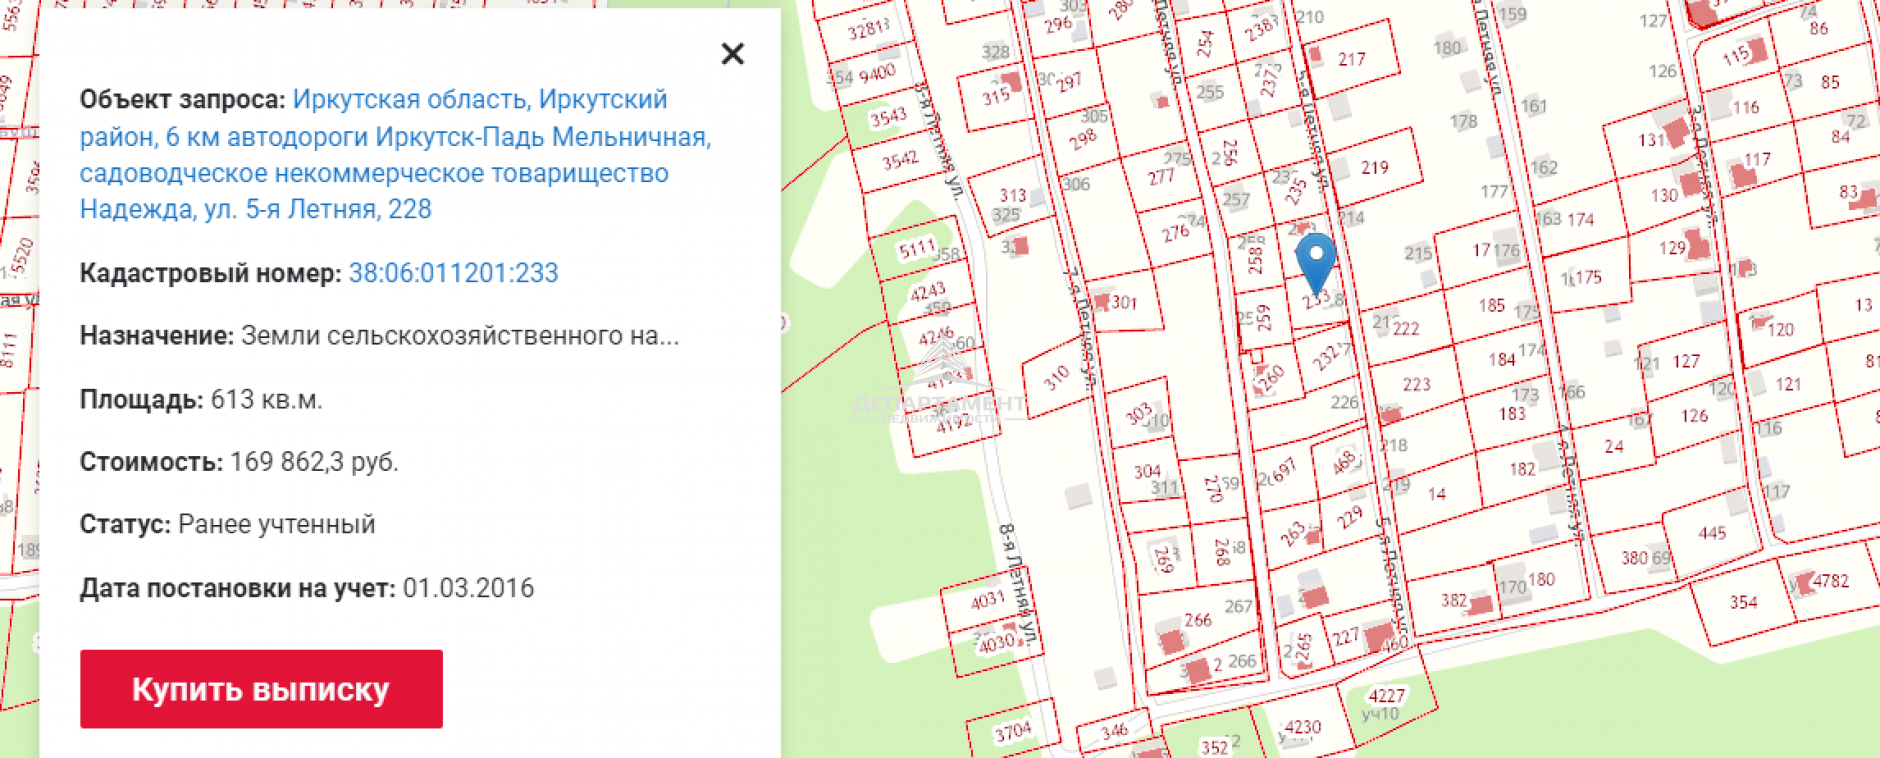 Продам земельный участок в Маркова по адресу СНТ Надежда Недвижимость Иркутская  область (Россия)  Залит в 2020 году